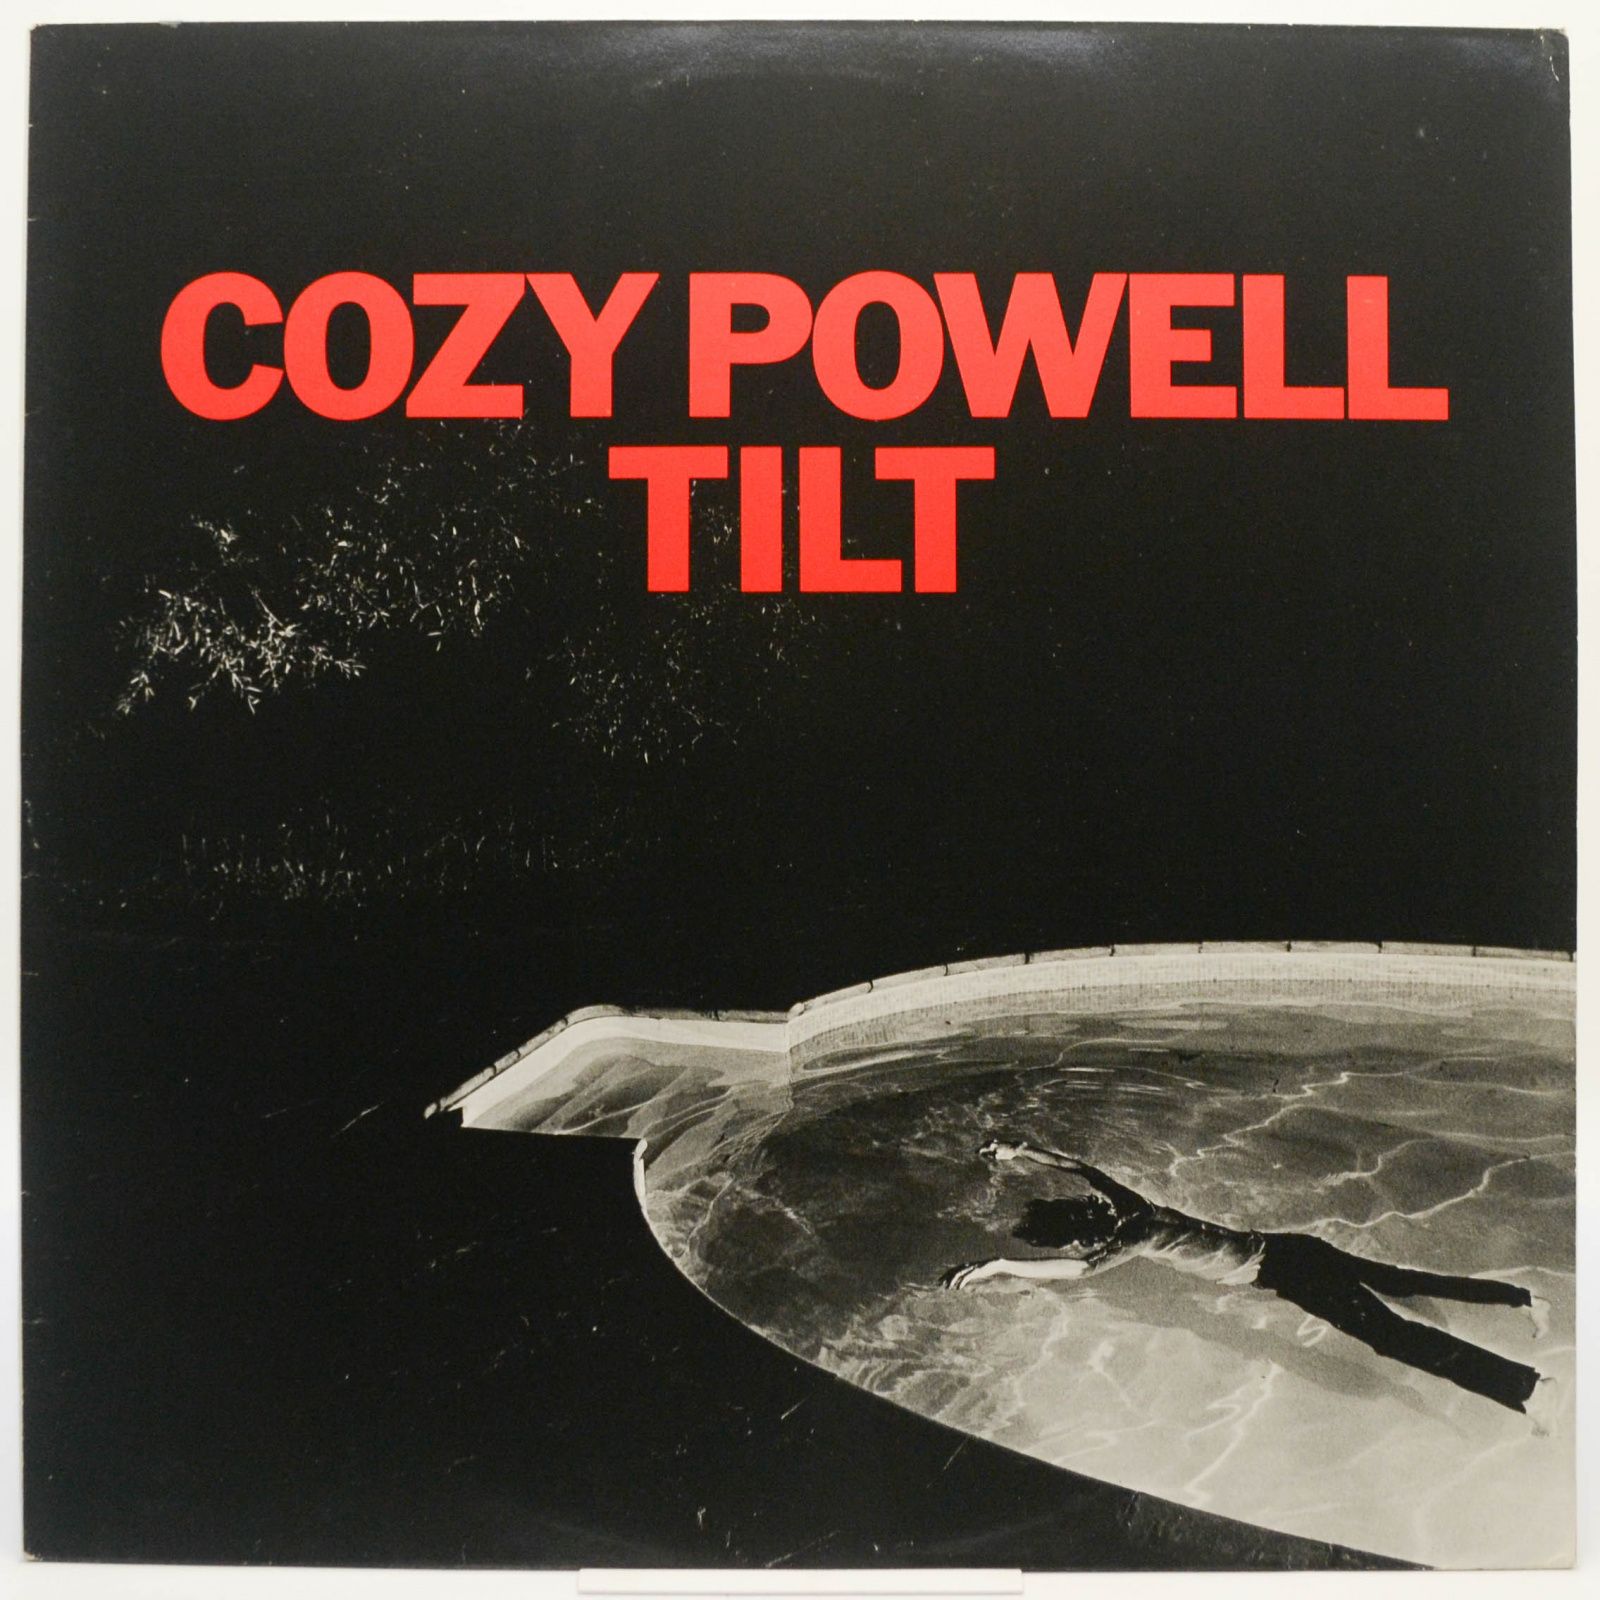 Cozy Powell — Tilt, 1981